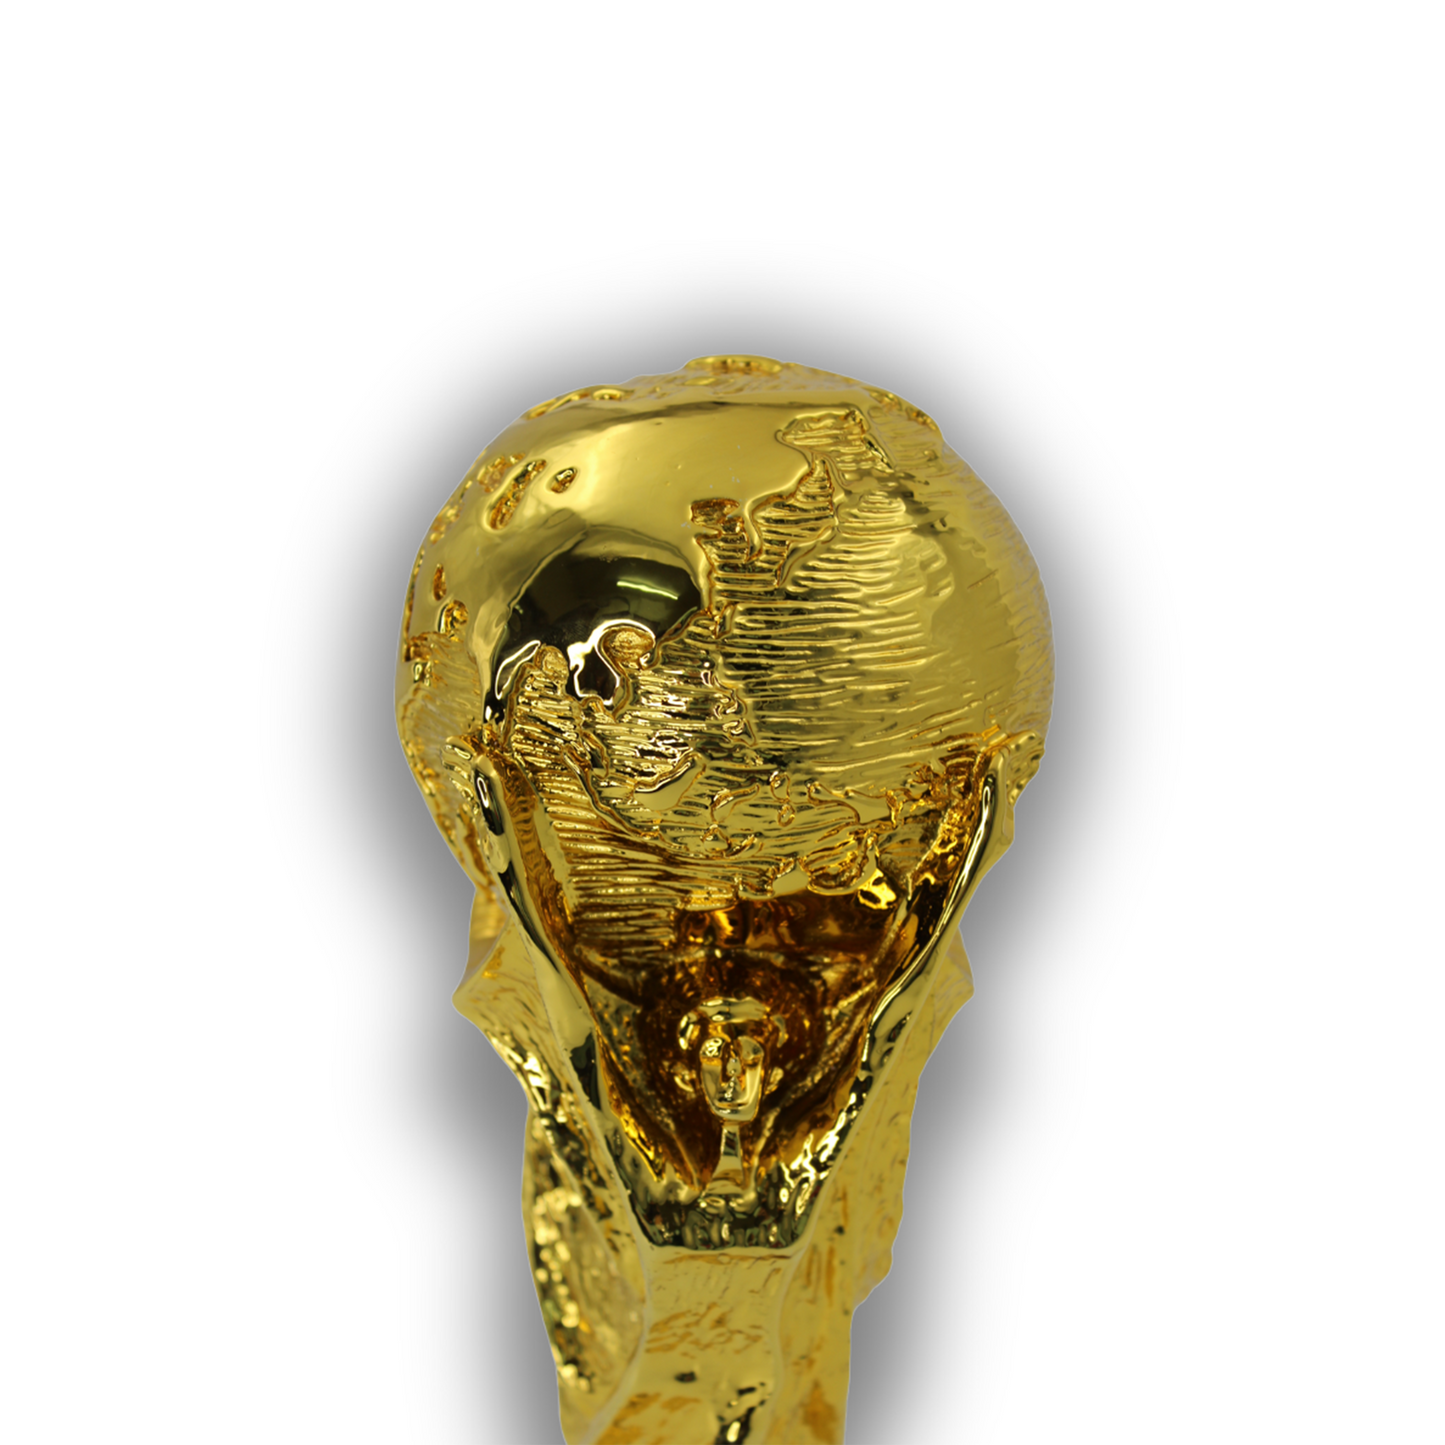 FIFA WORLD CUP REPLICA